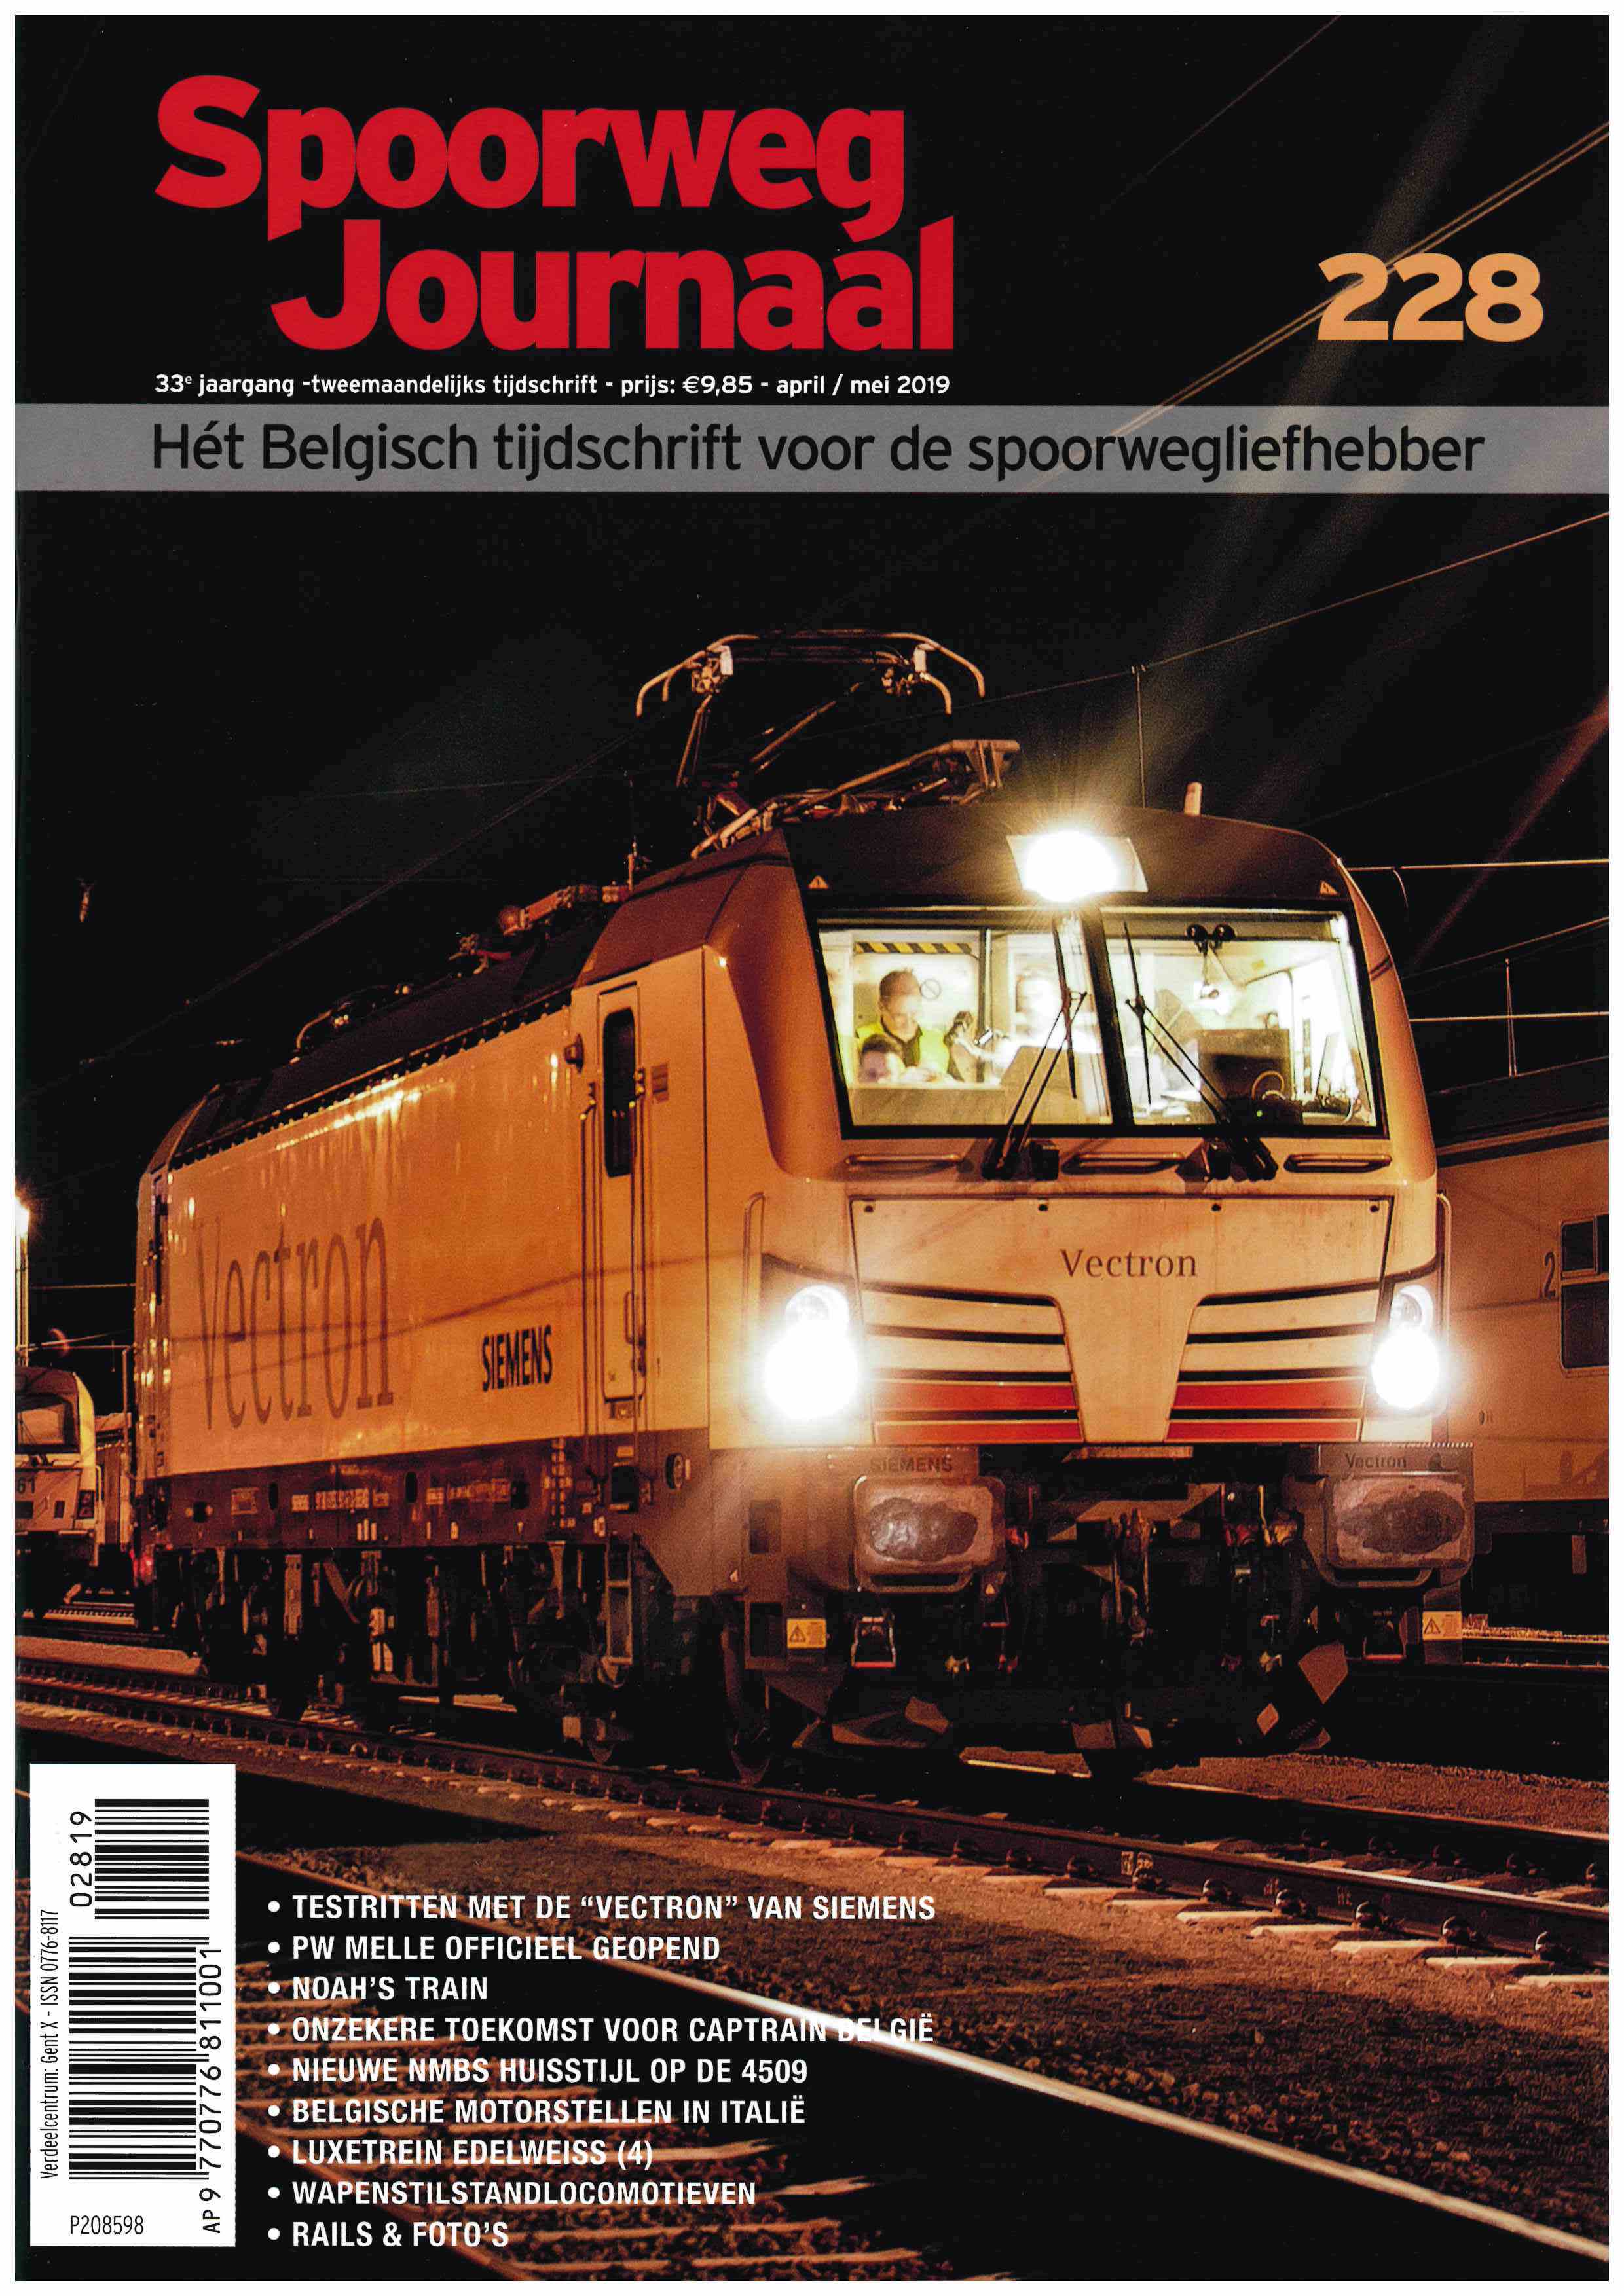 Spoorweg Journal 228 niederländische/flämische Ausgabe